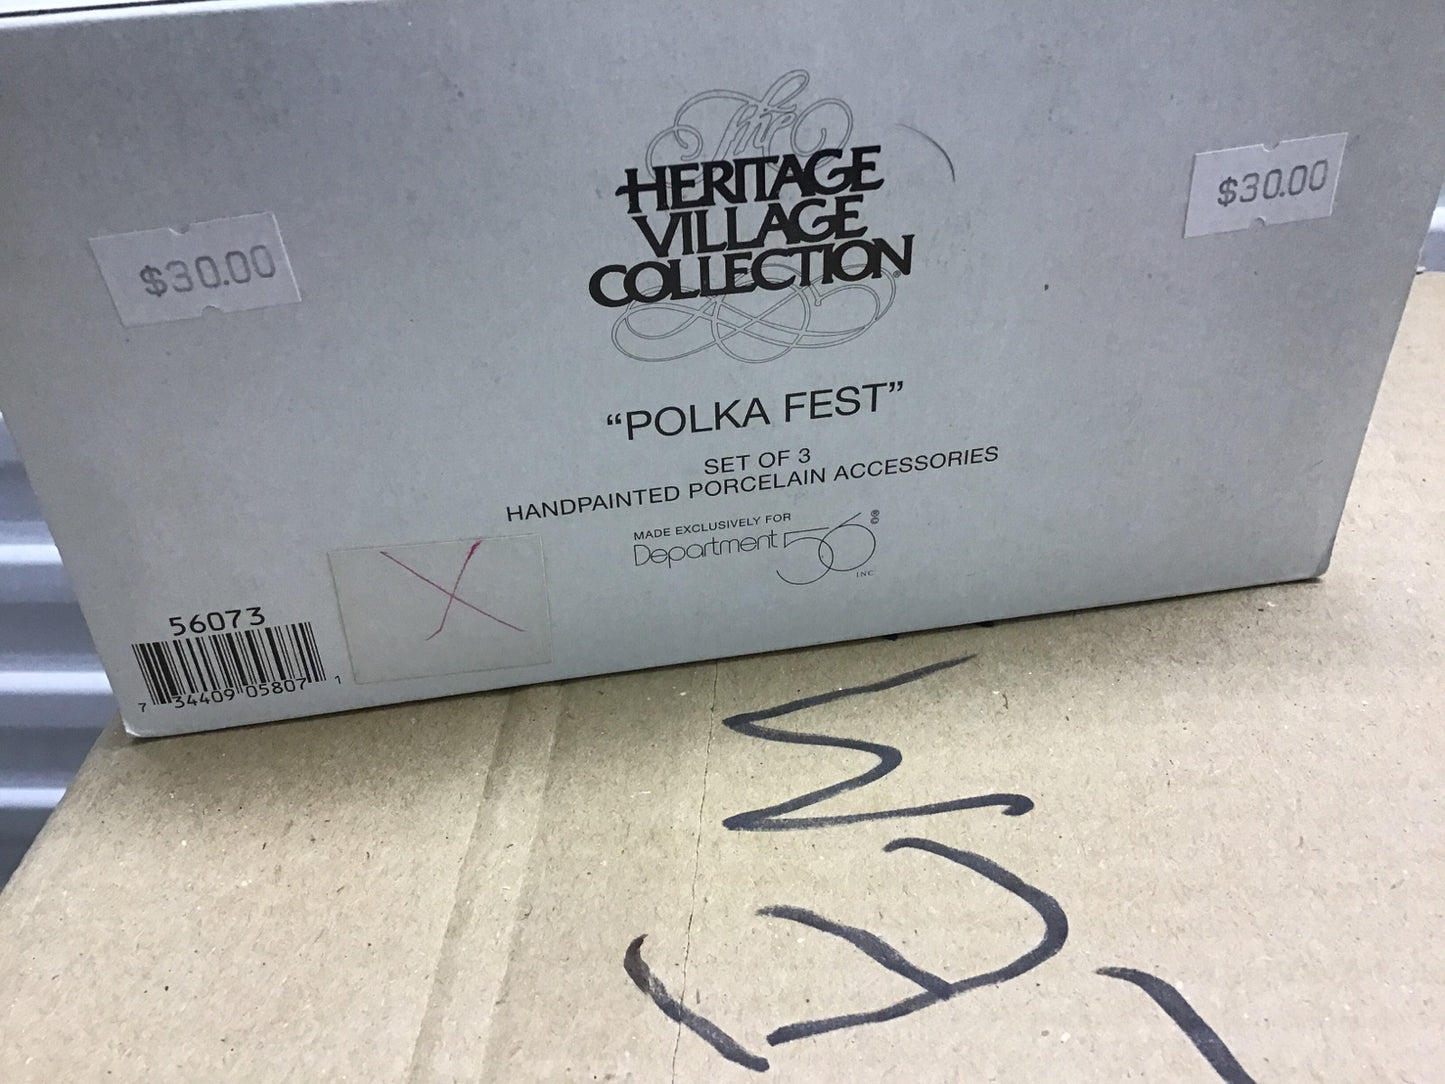 Polka Fest